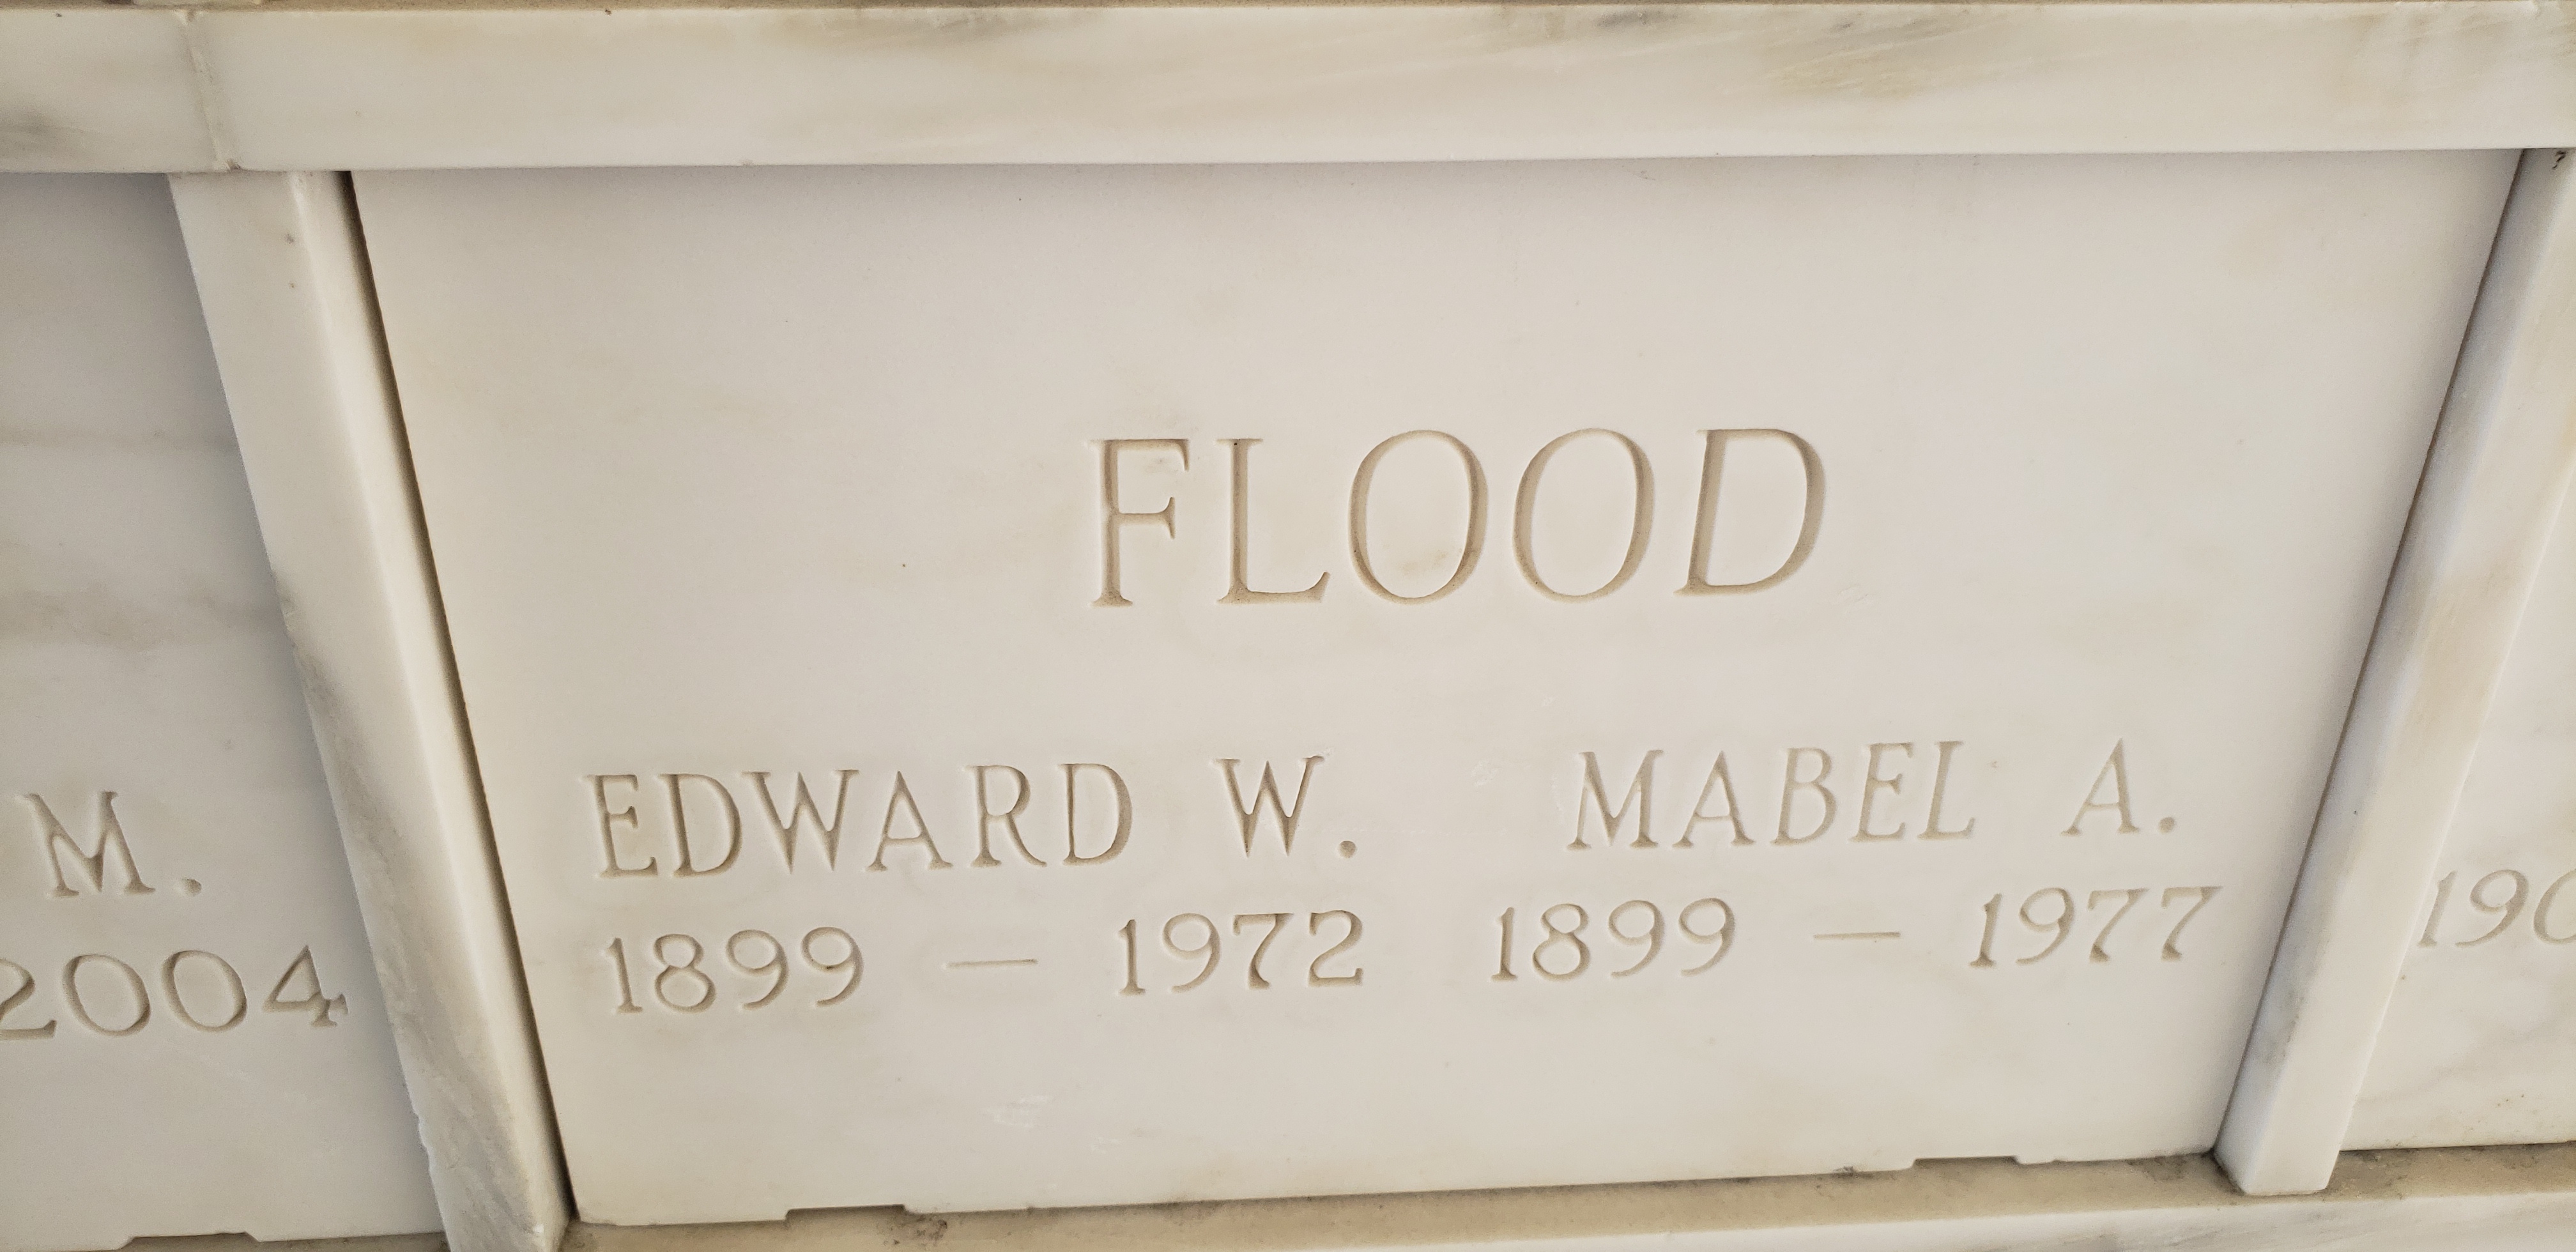 Edward W Flood